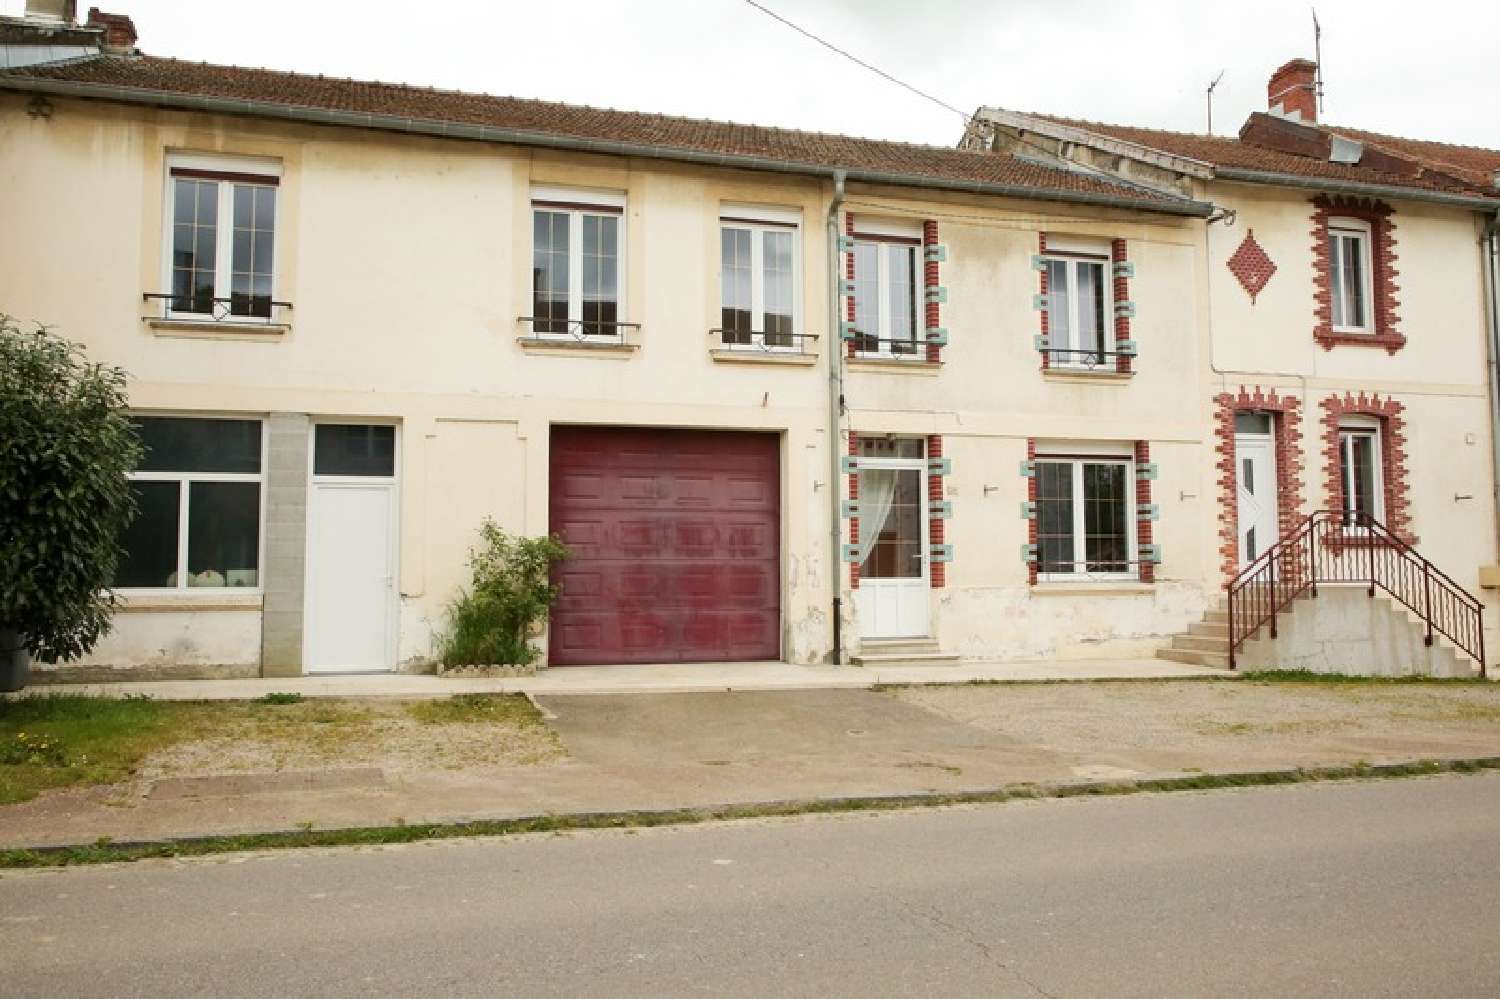  for sale village house Romagne-sous-Montfaucon Meuse 1